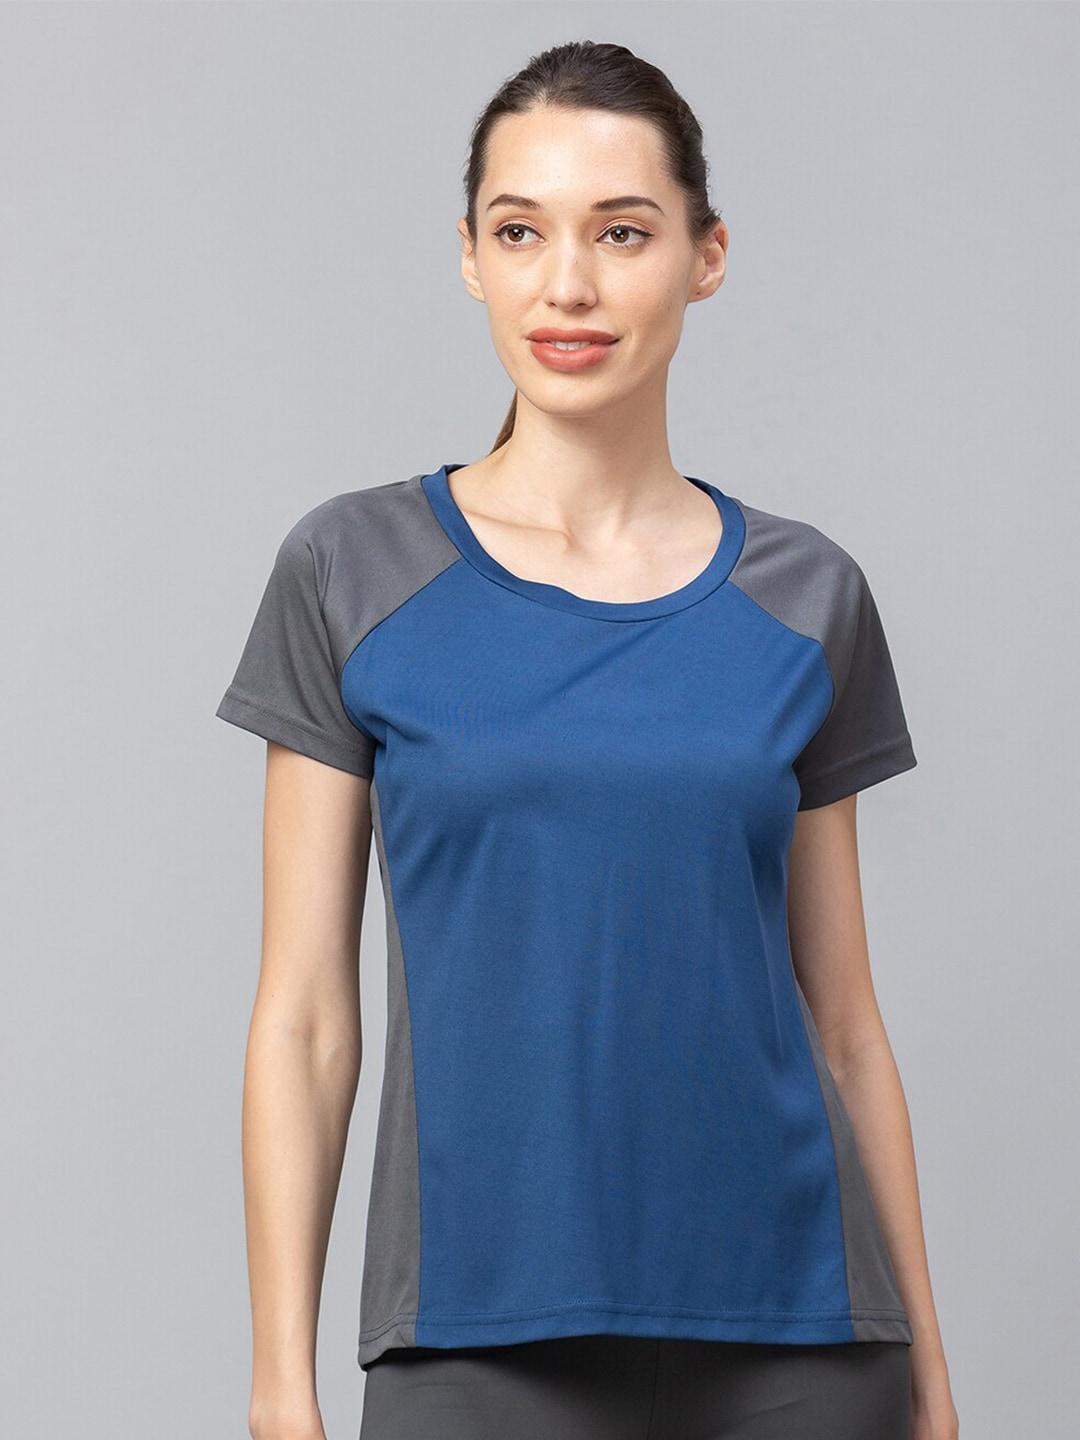 globus-women-blue-v-neck-t-shirt